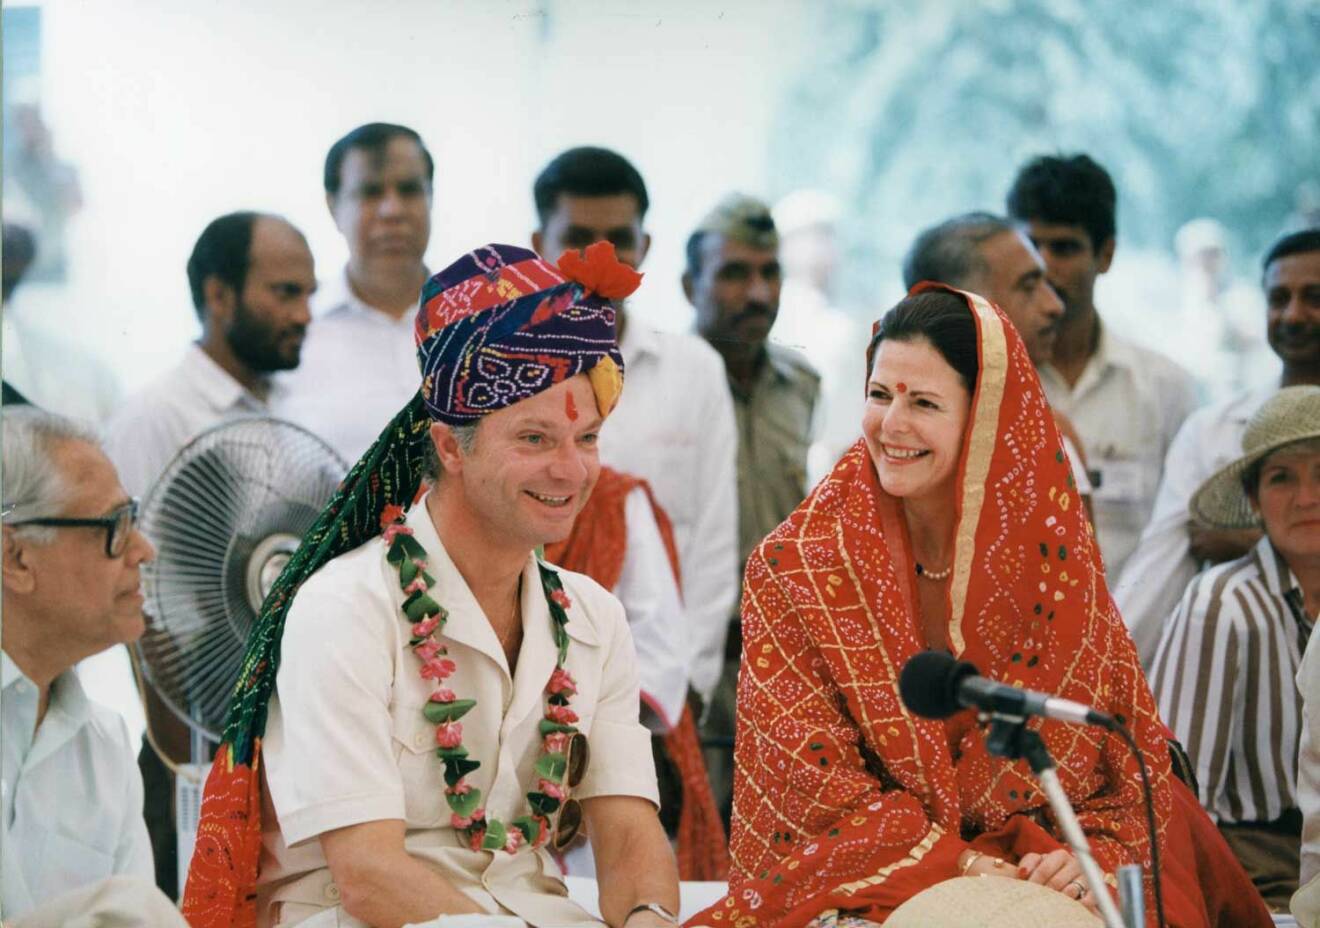 1993 for drottningen och kungen till Indien och tog klädkoden på största allvar.